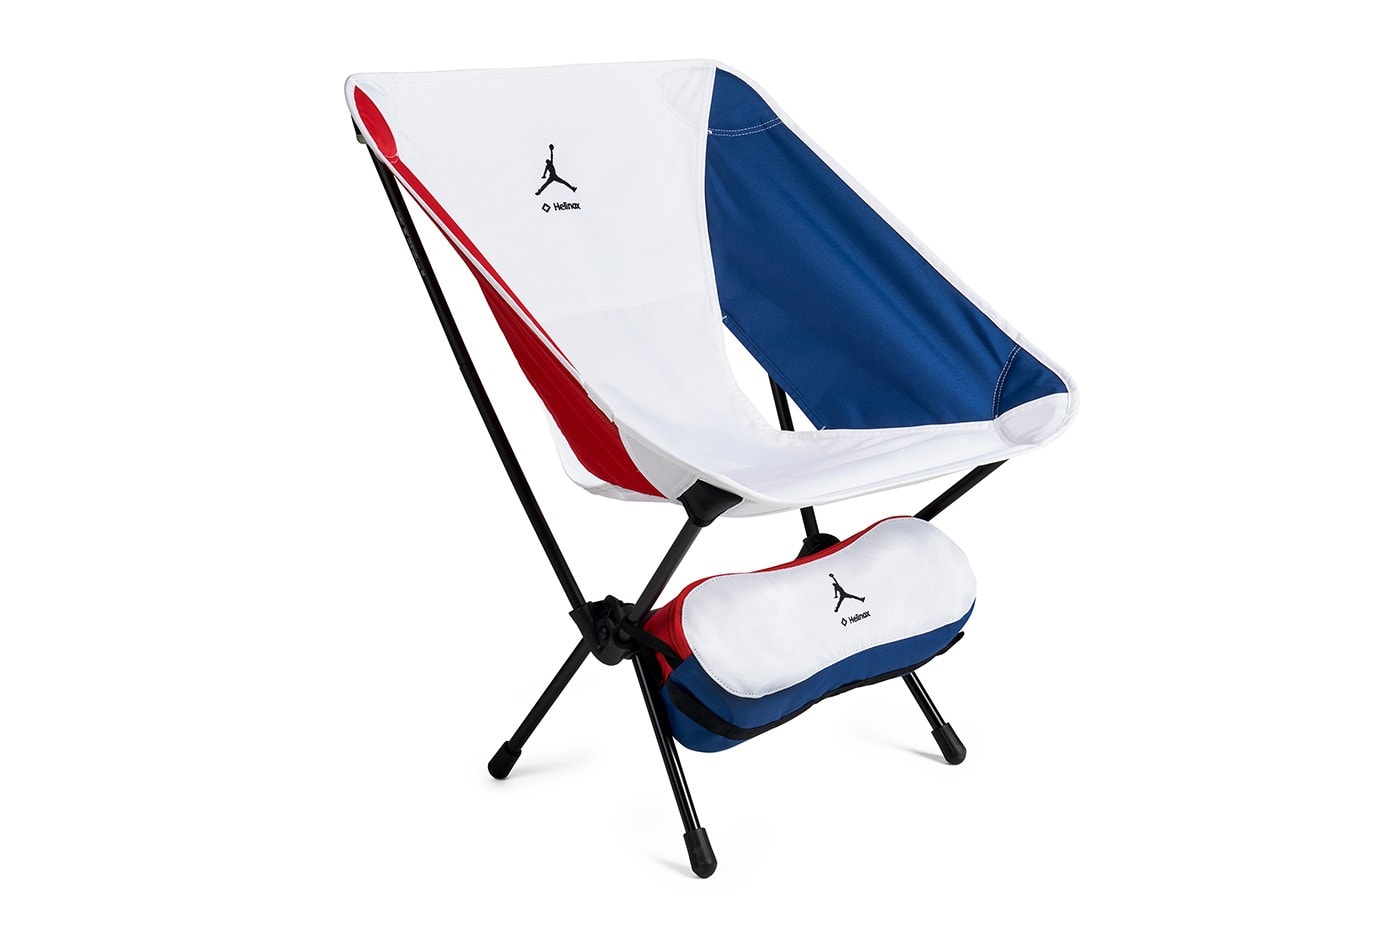 Jordan Brand x Helinox 最新聯名露營椅「Chair One」正式登場